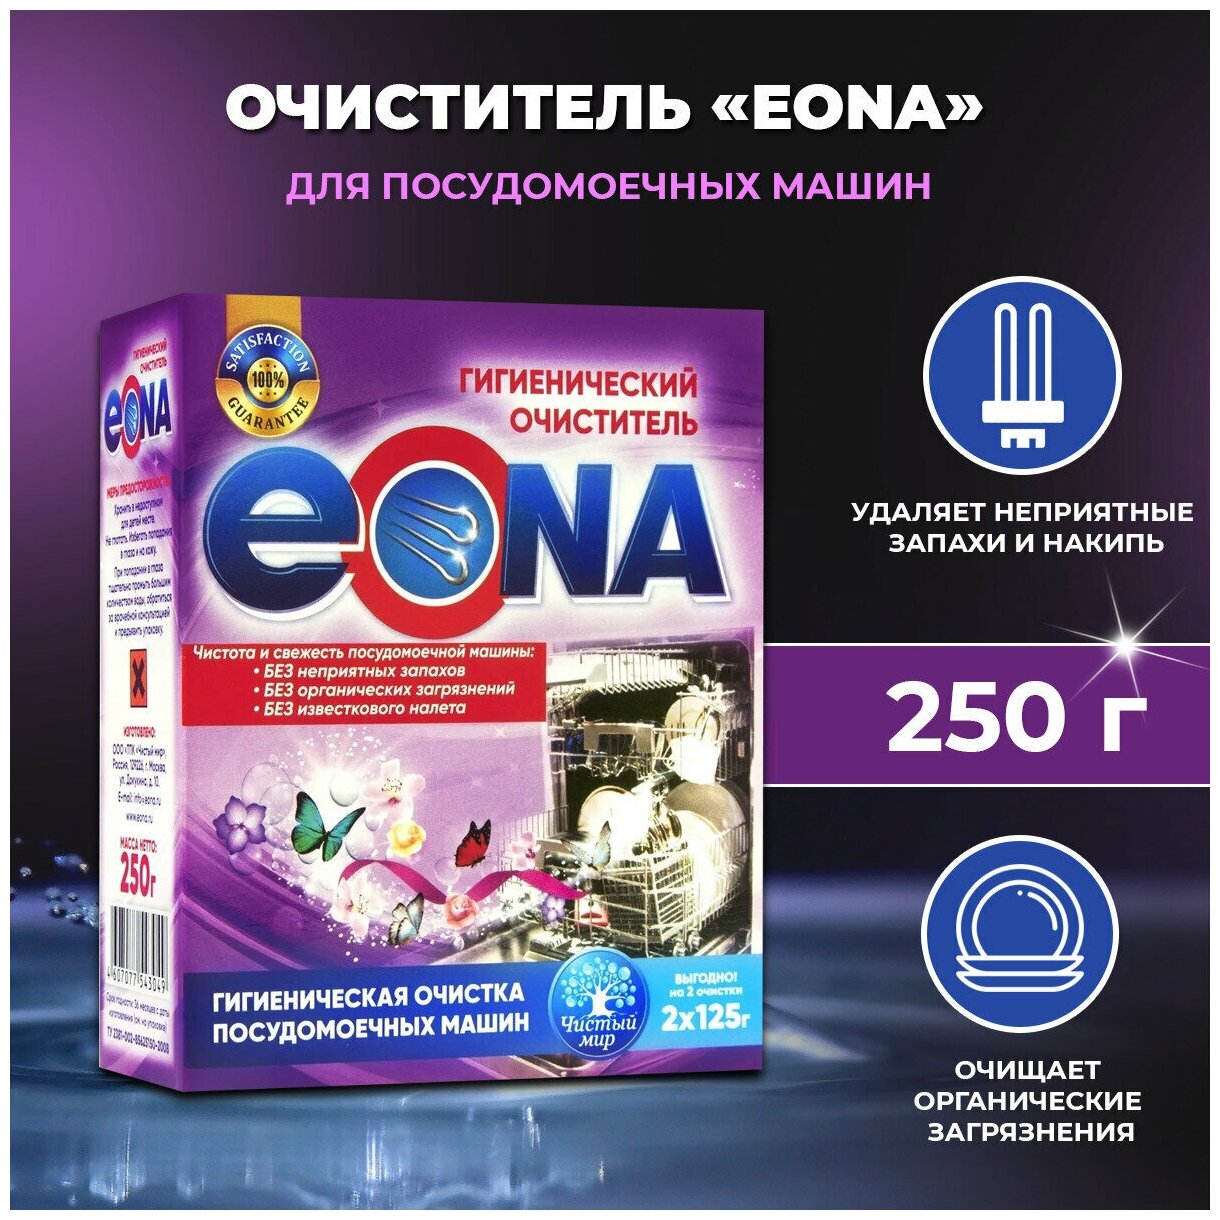 Очиститель для посудомоечных машин "эона" 250 г.